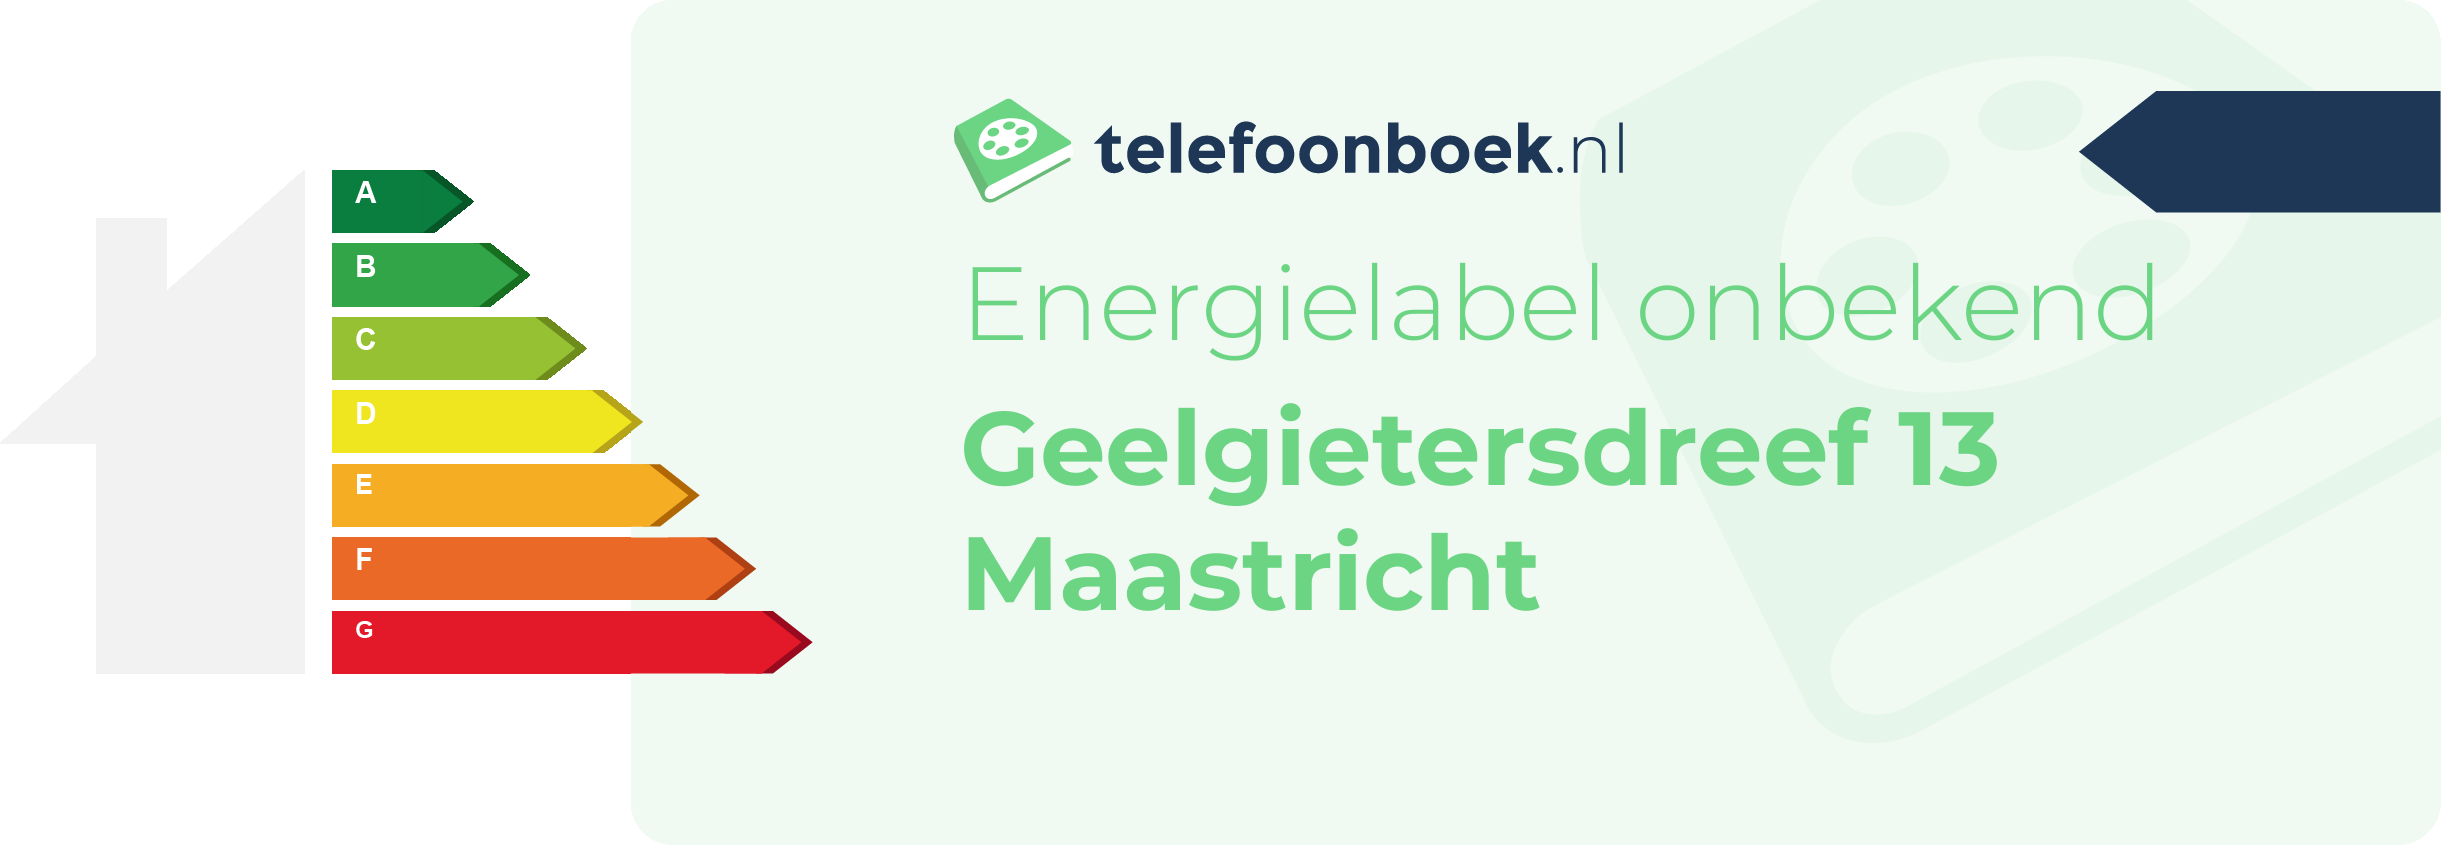 Energielabel Geelgietersdreef 13 Maastricht